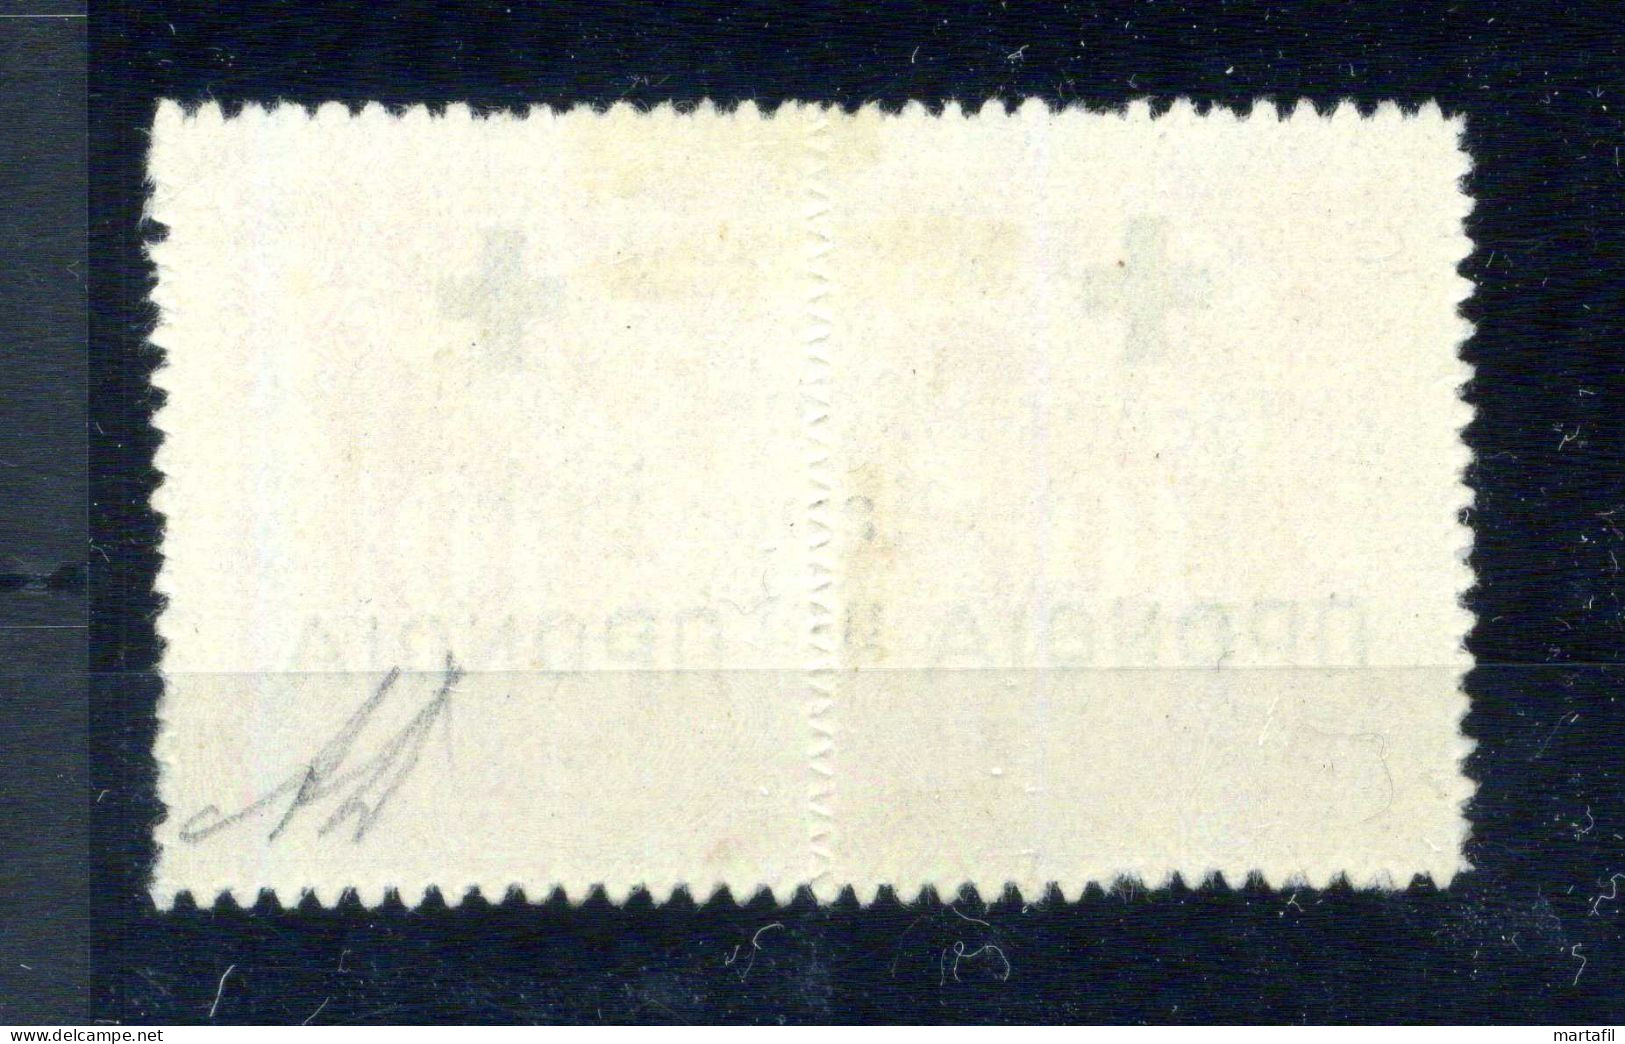 1941 CEFALONIA E ITACA, Occ. Italiana Della Grecia, S.N28 10+10 In Coppia USATA, Firmata DIENA - Cefalonia & Itaca